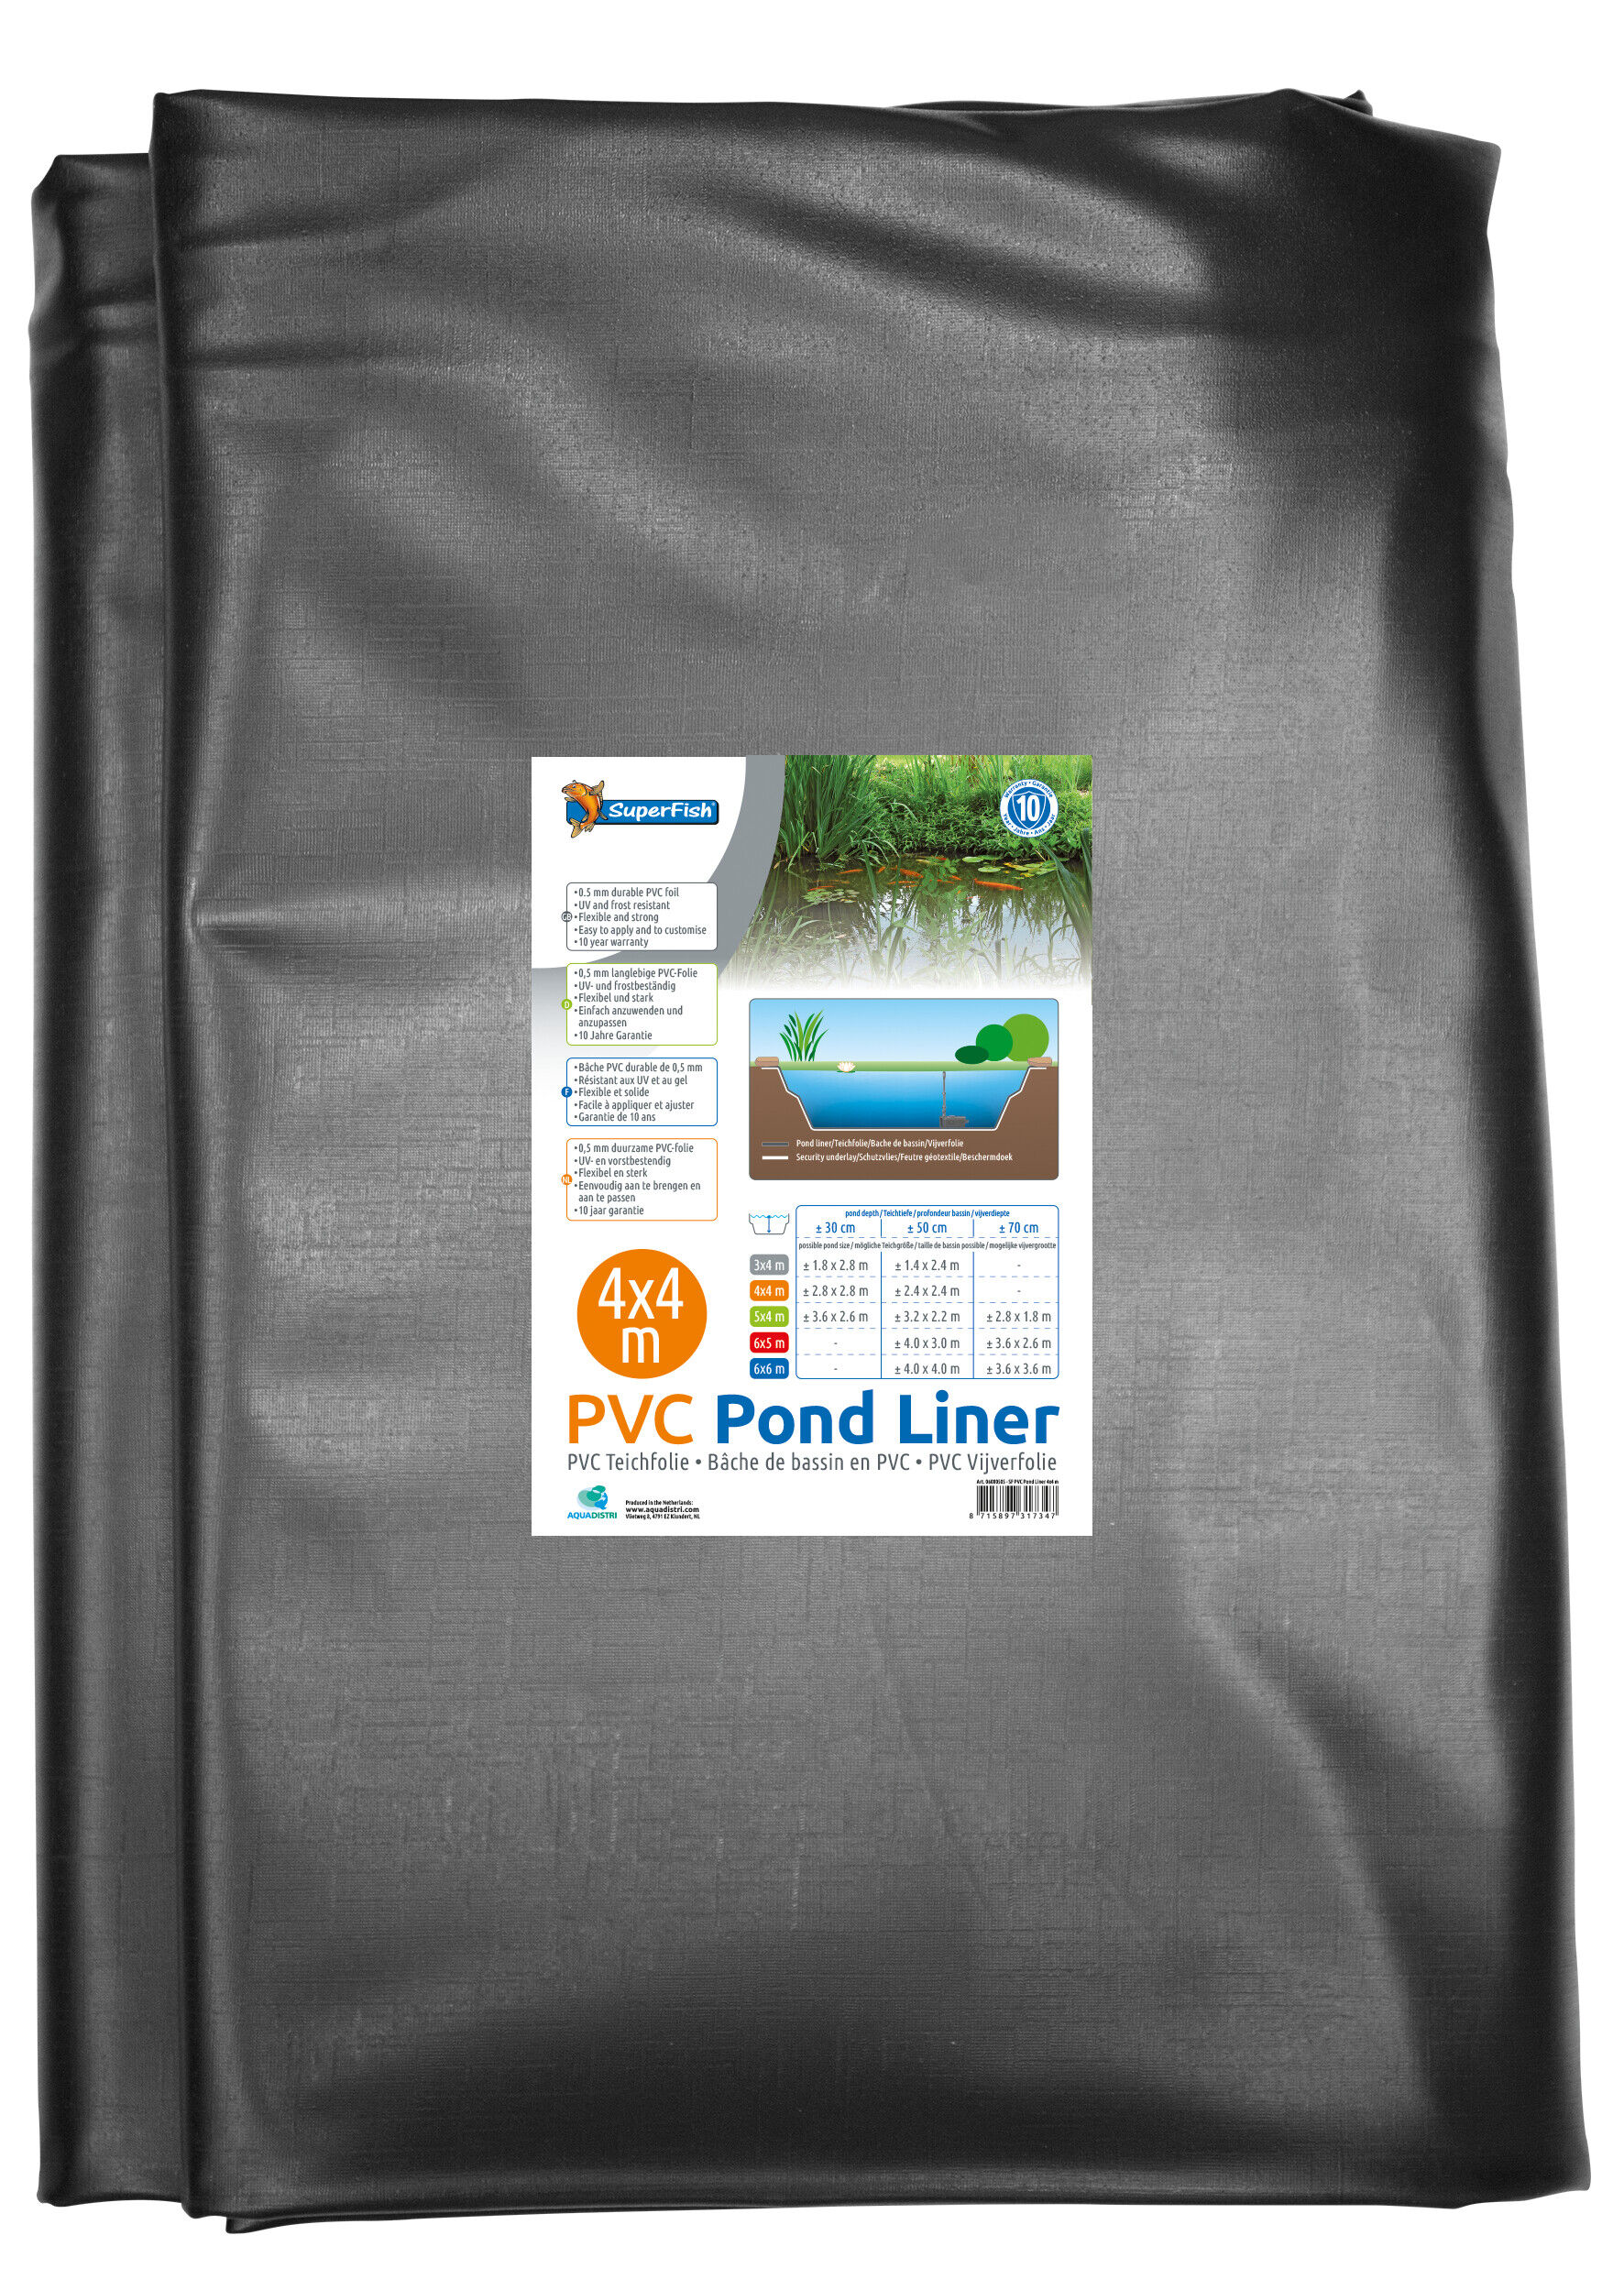 Pond Liner 4x4 M